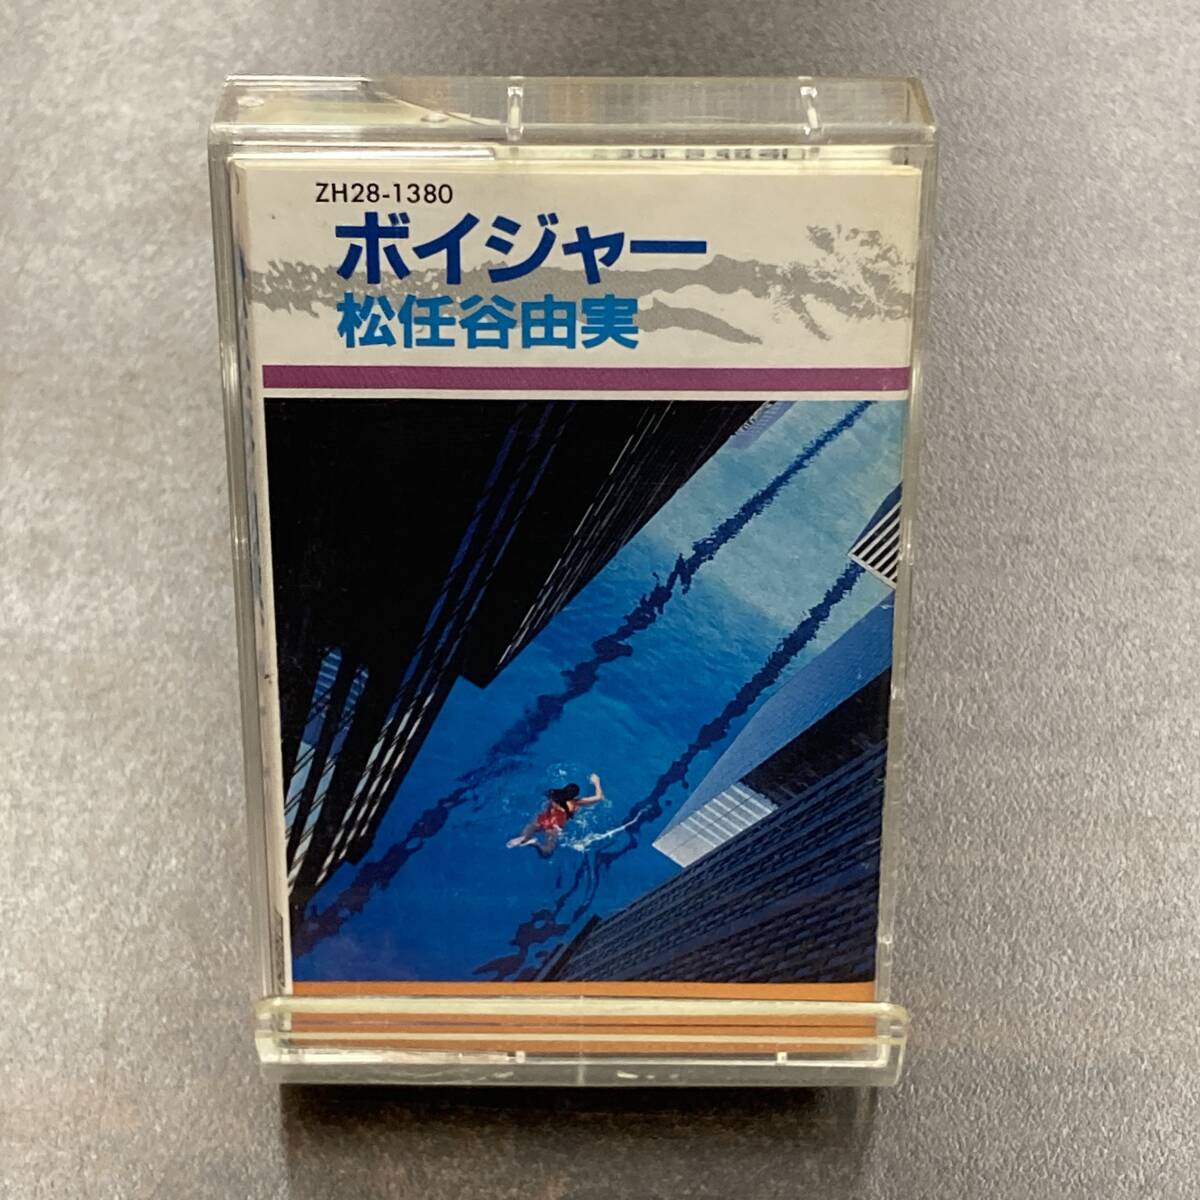 1157M 松任谷由実 ボイジャー カセットテープ / Yumi Matsutouya Citypop Cassette Tapeの画像1